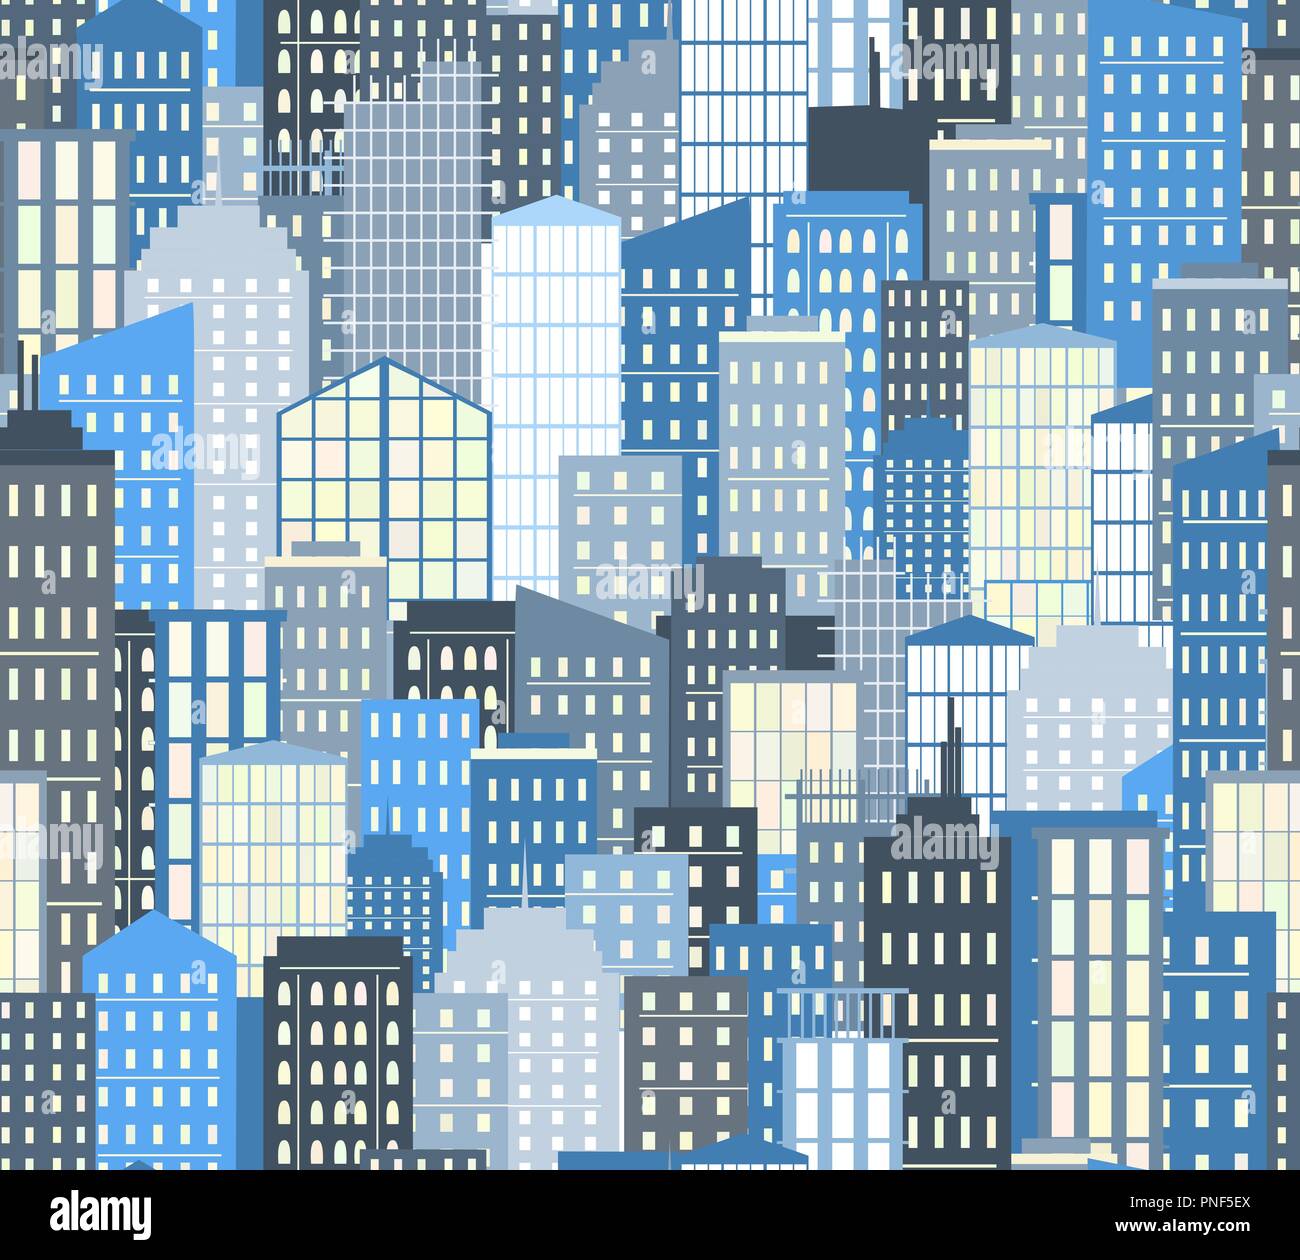 Paisaje urbano sin fisuras. Ilustración vectorial. Ciudad de fondo, paleta de colores gris y azul Ilustración del Vector